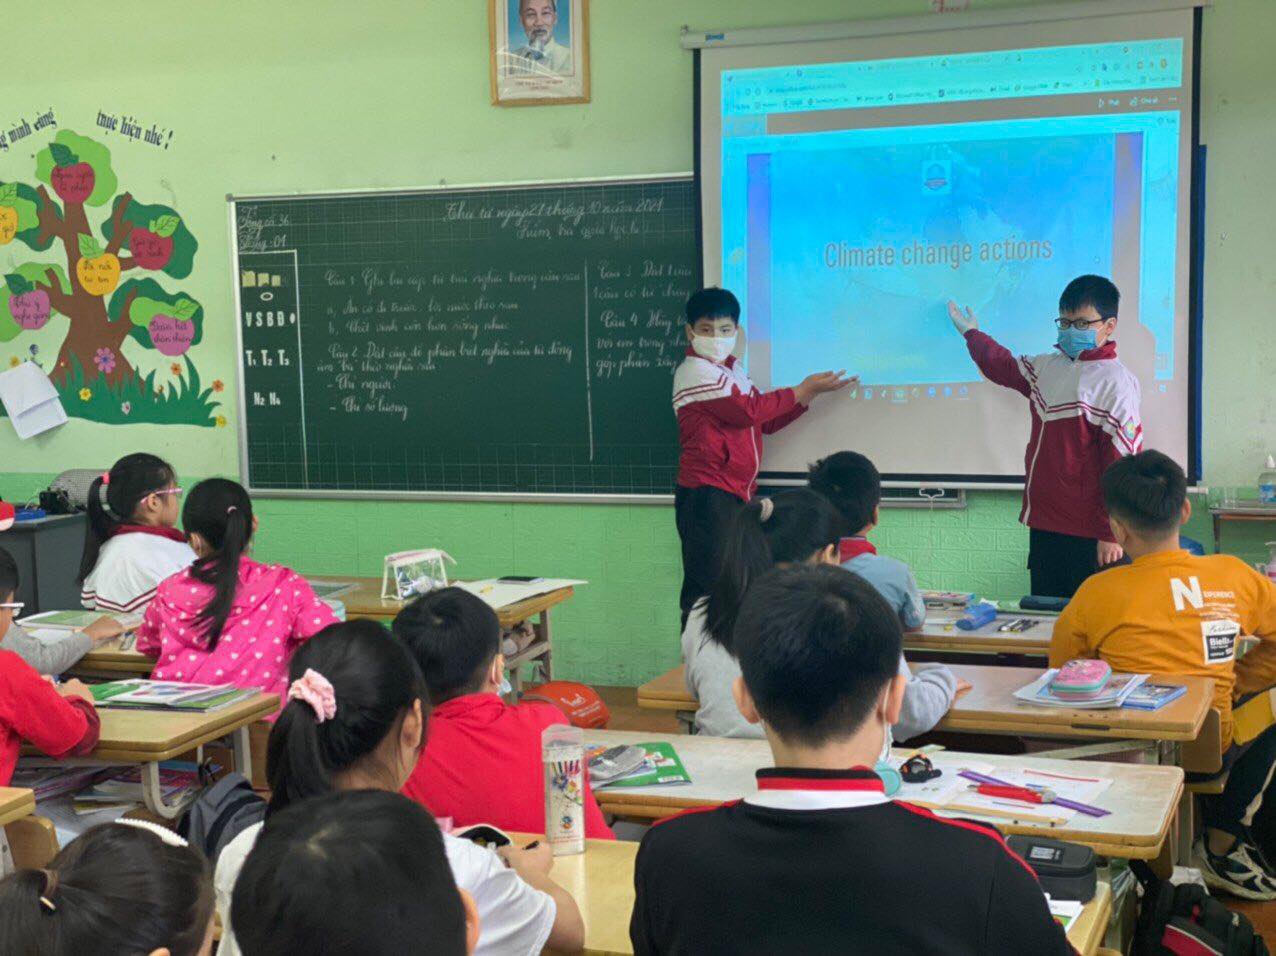 Trường Tiểu học tại Lào Cai nhận giải “Trường học xuất sắc trong Dự án Hành động về khí hậu”